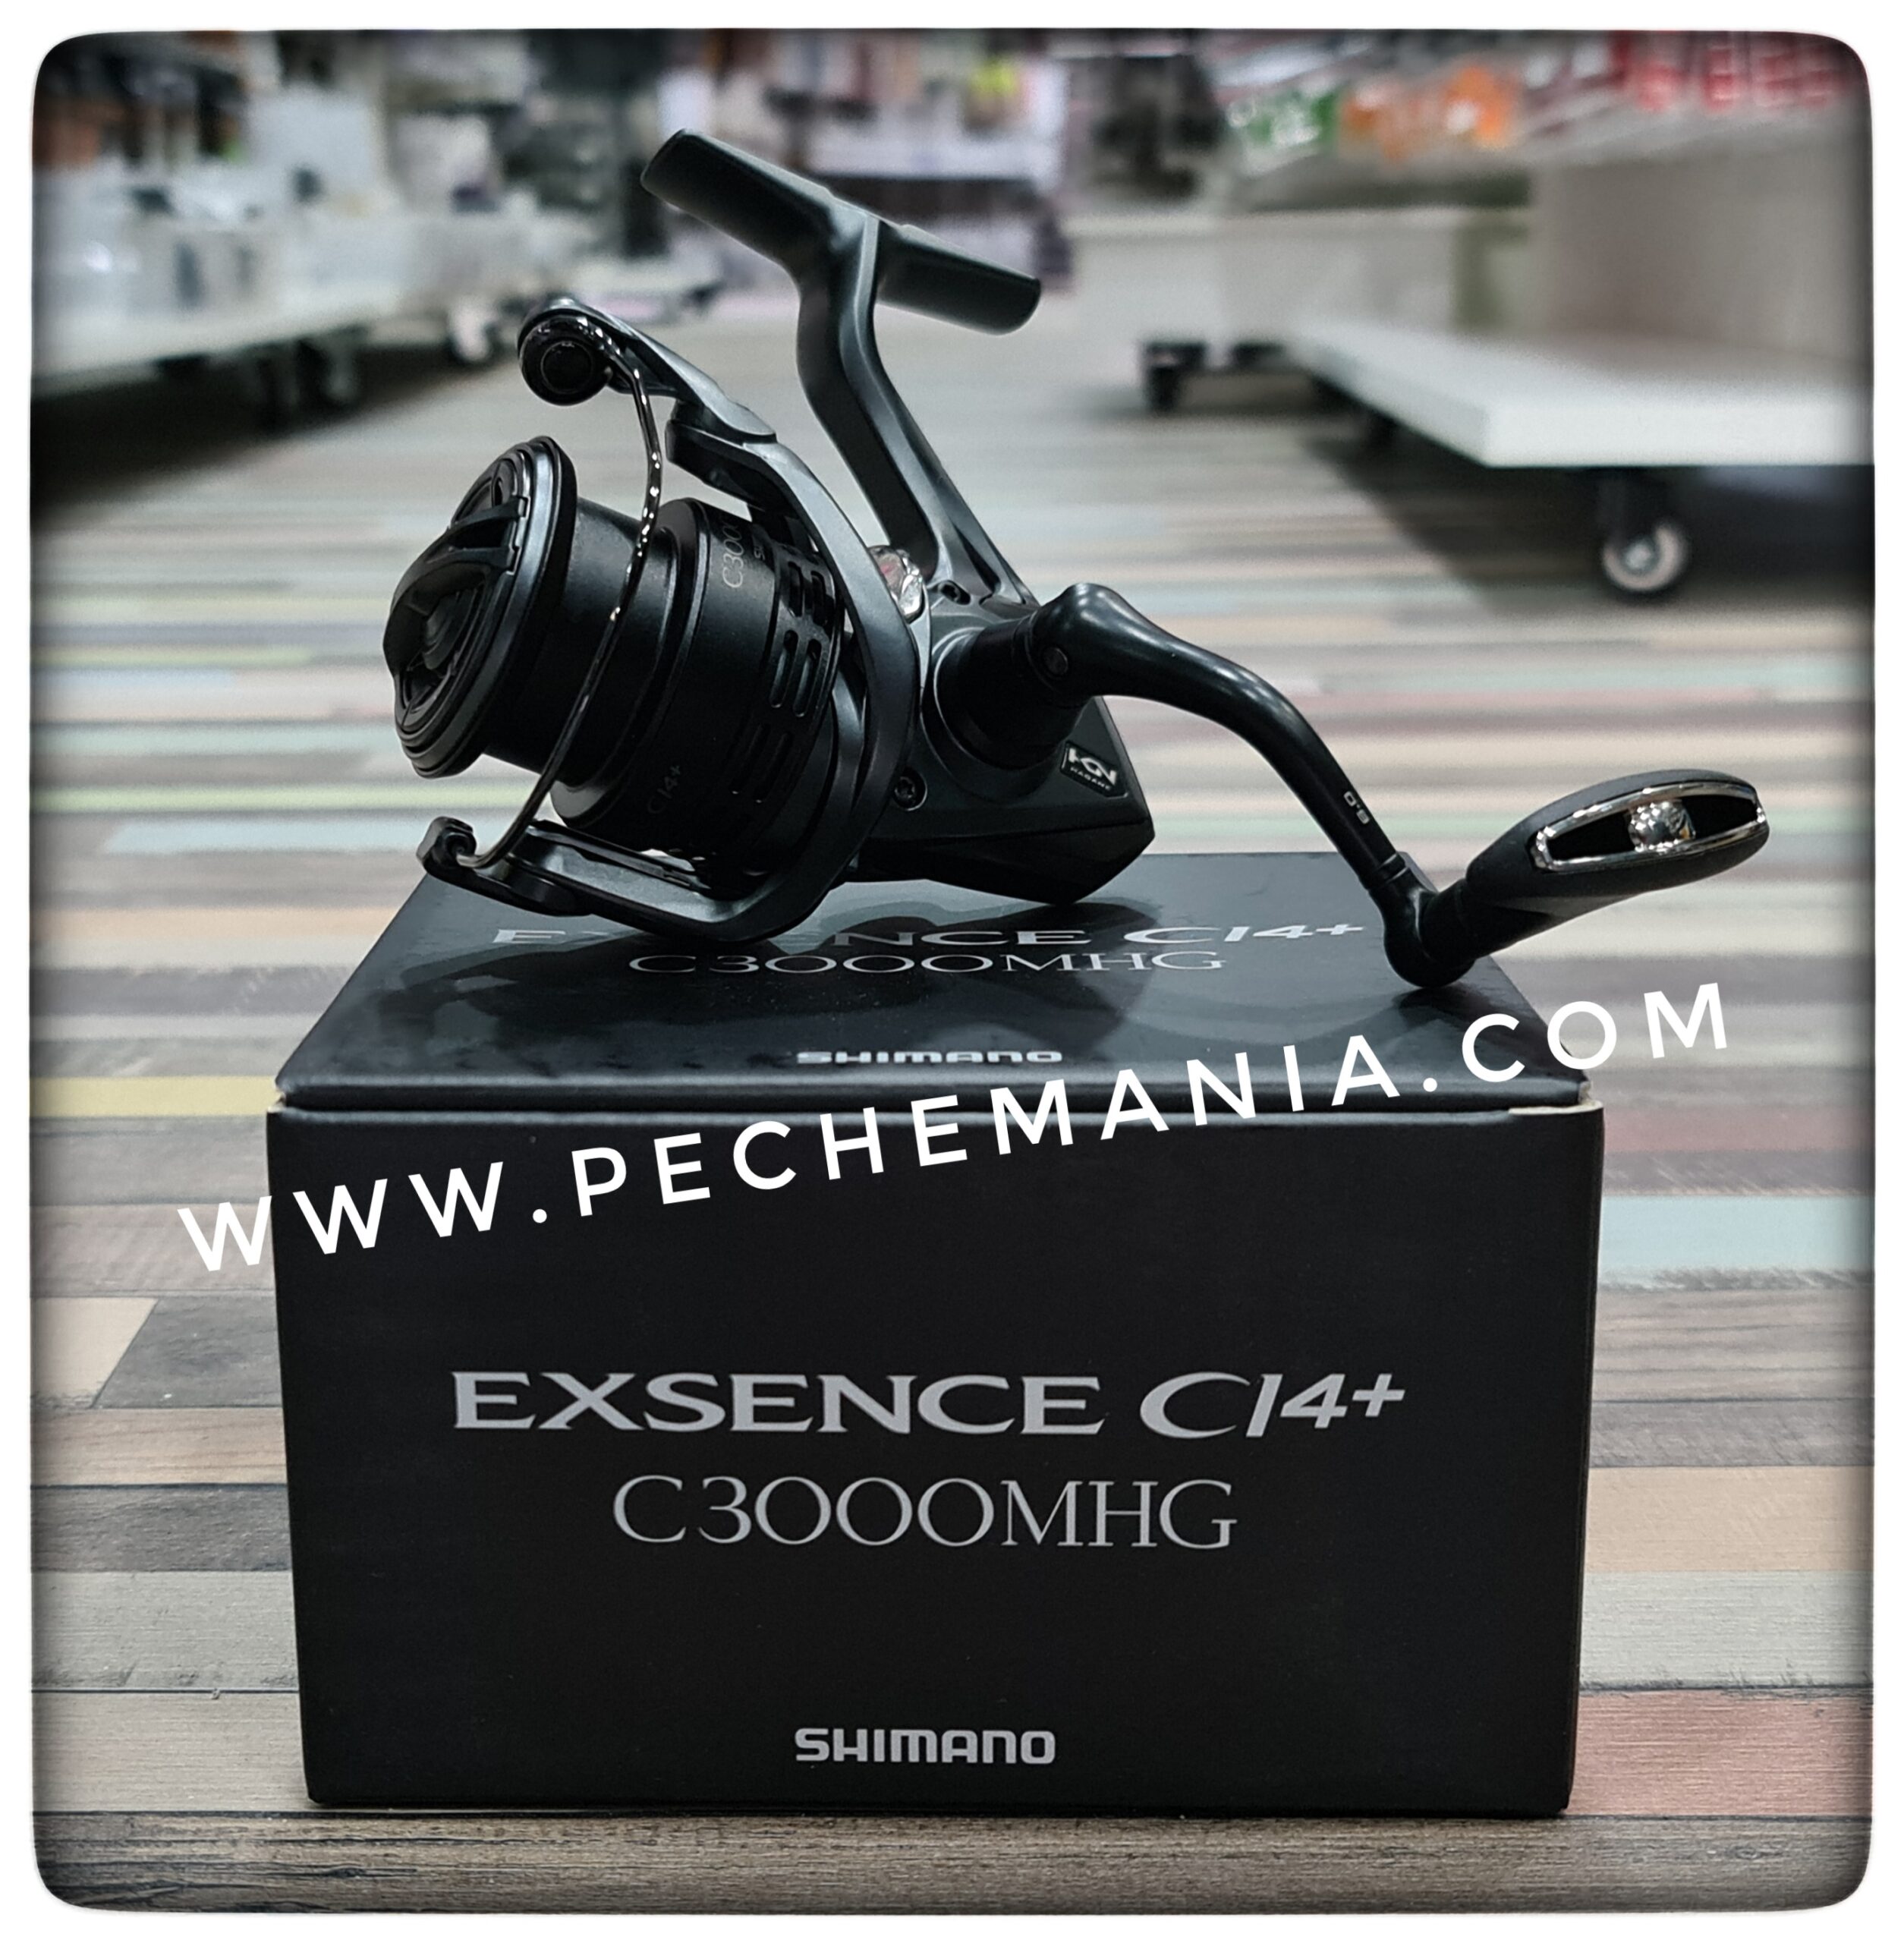 moulinet shimano exsence C14+ c3000mhg - Pechemania